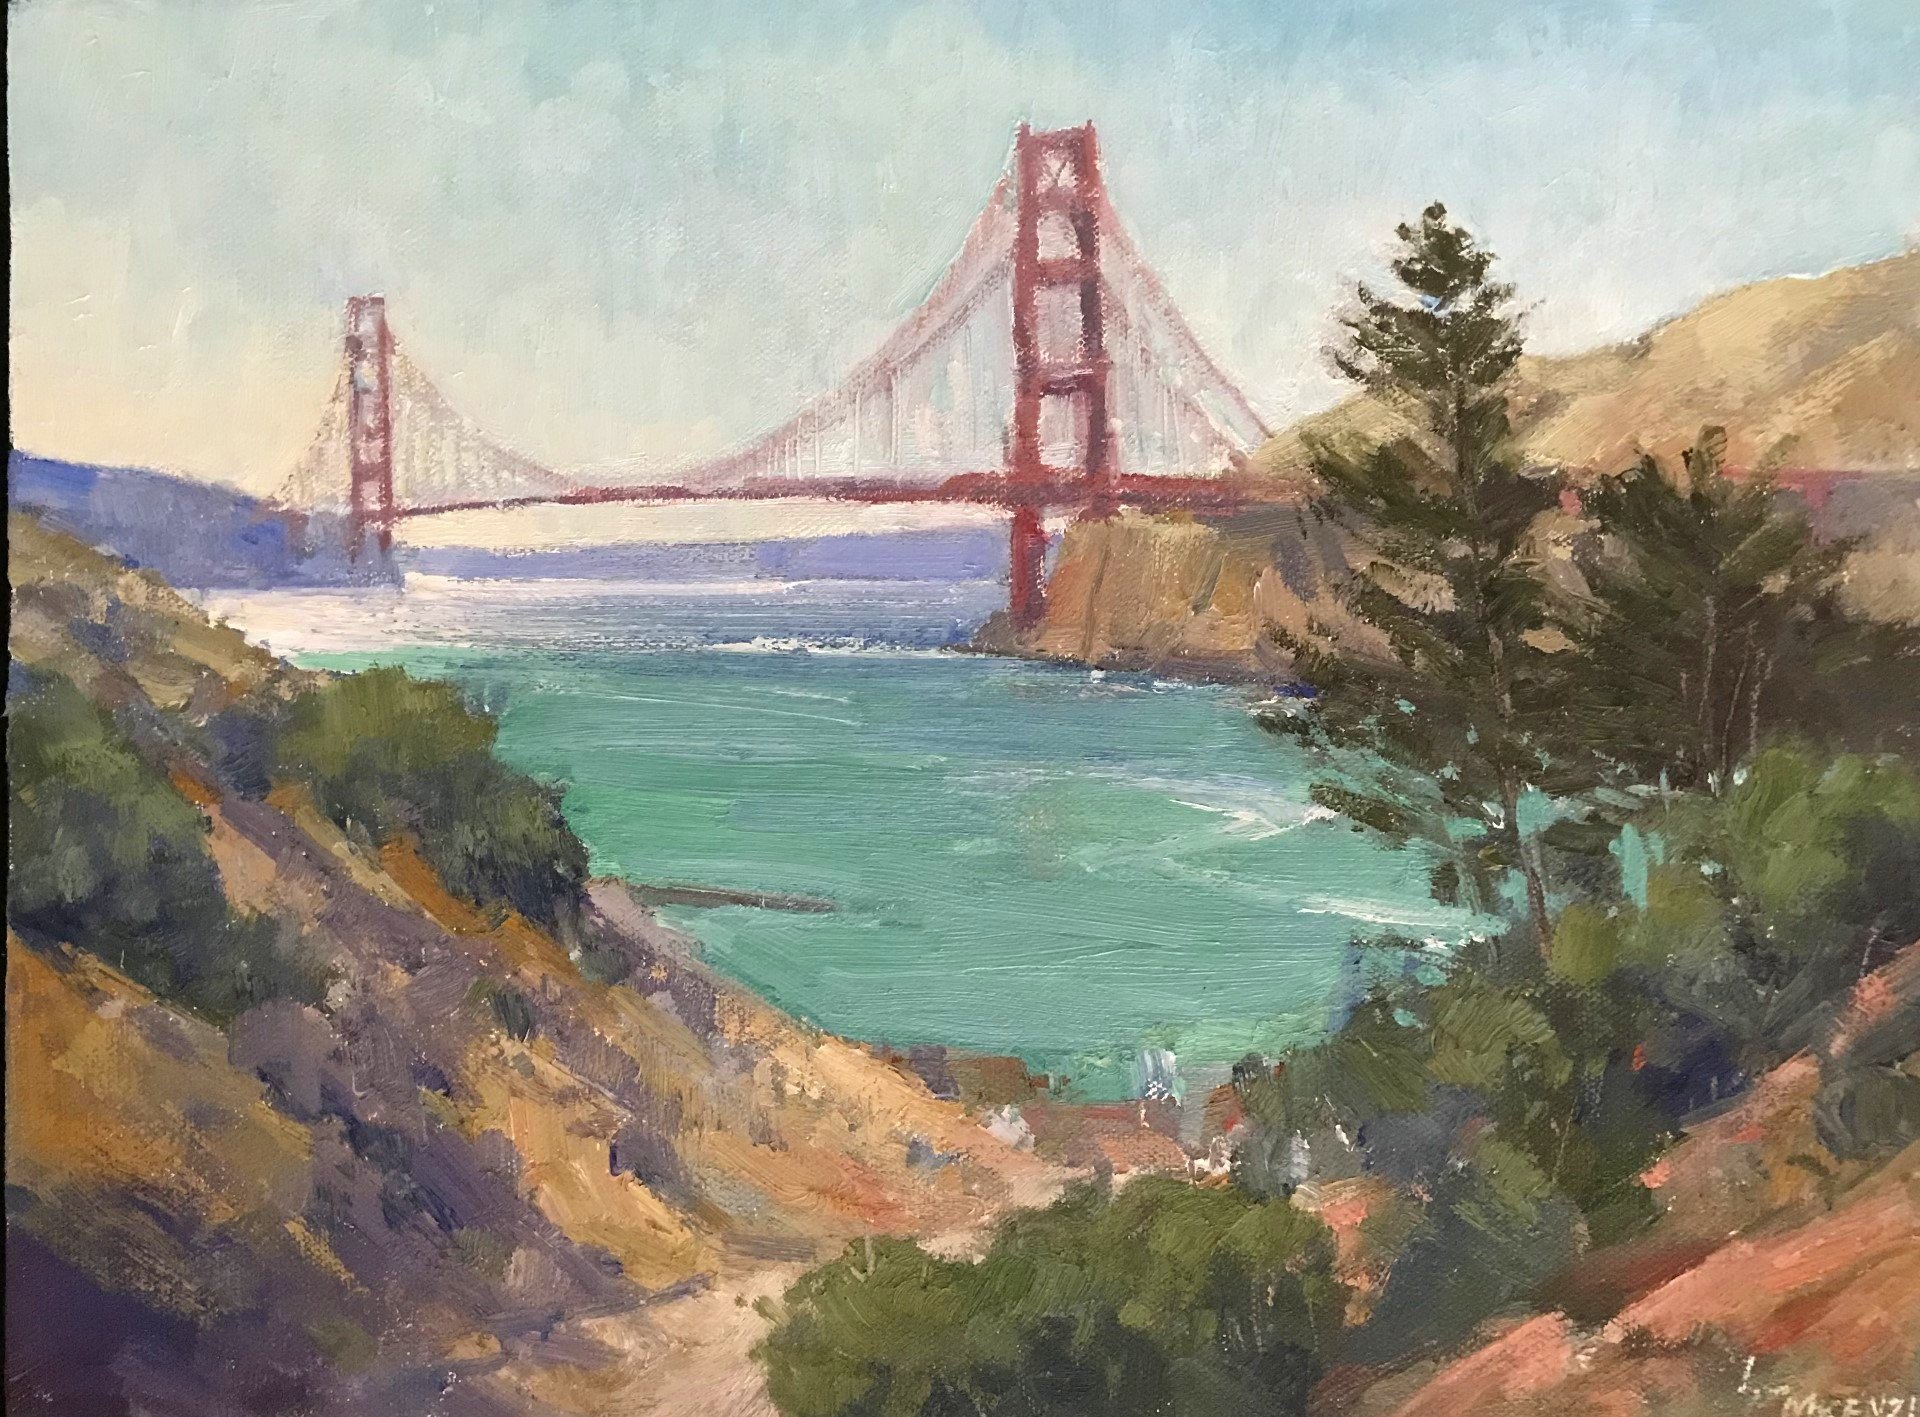  “Bridge View” 11x14, $900. 